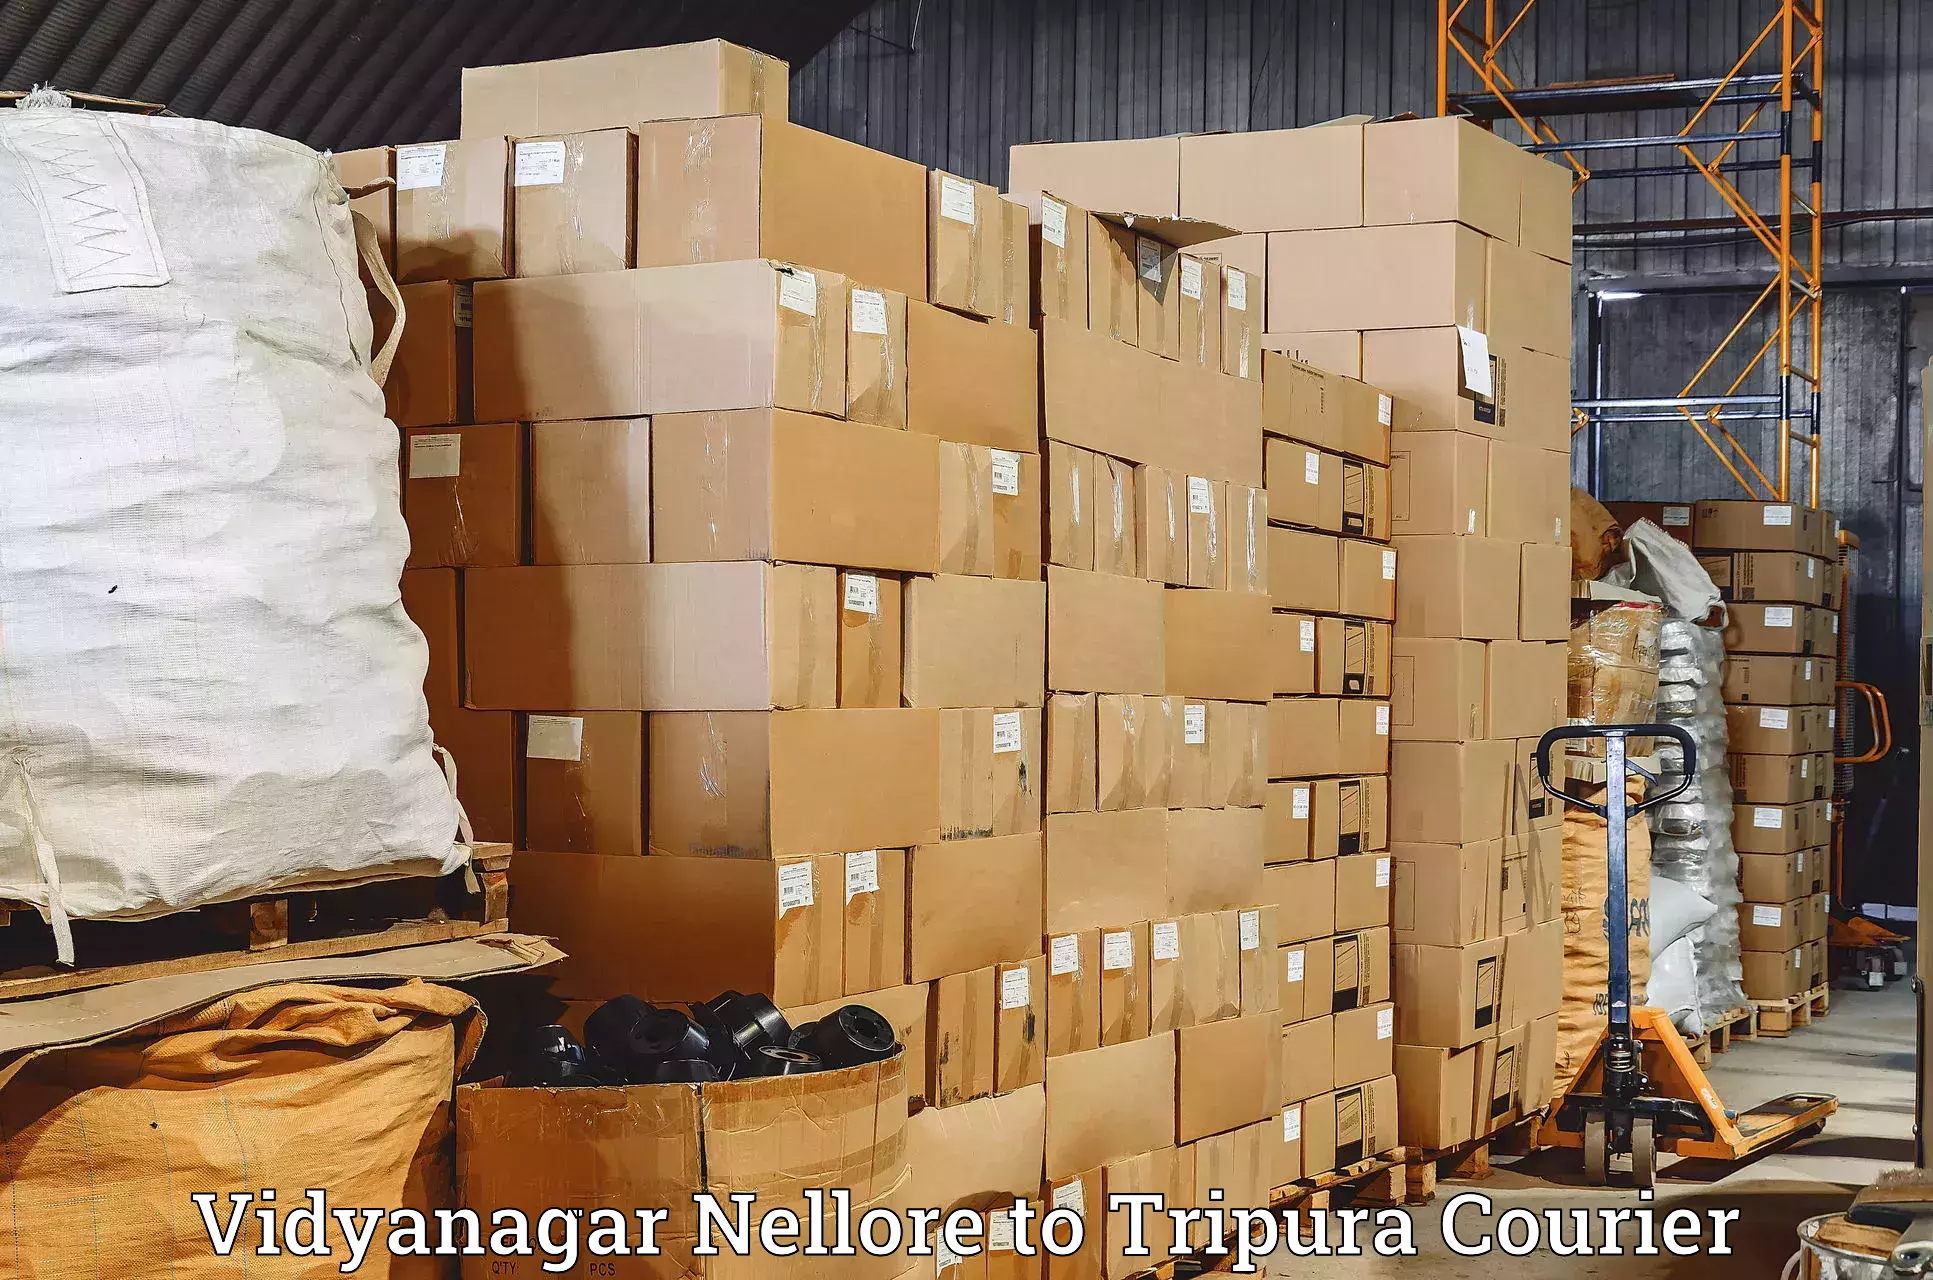 Door-to-door freight service Vidyanagar Nellore to Amarpur